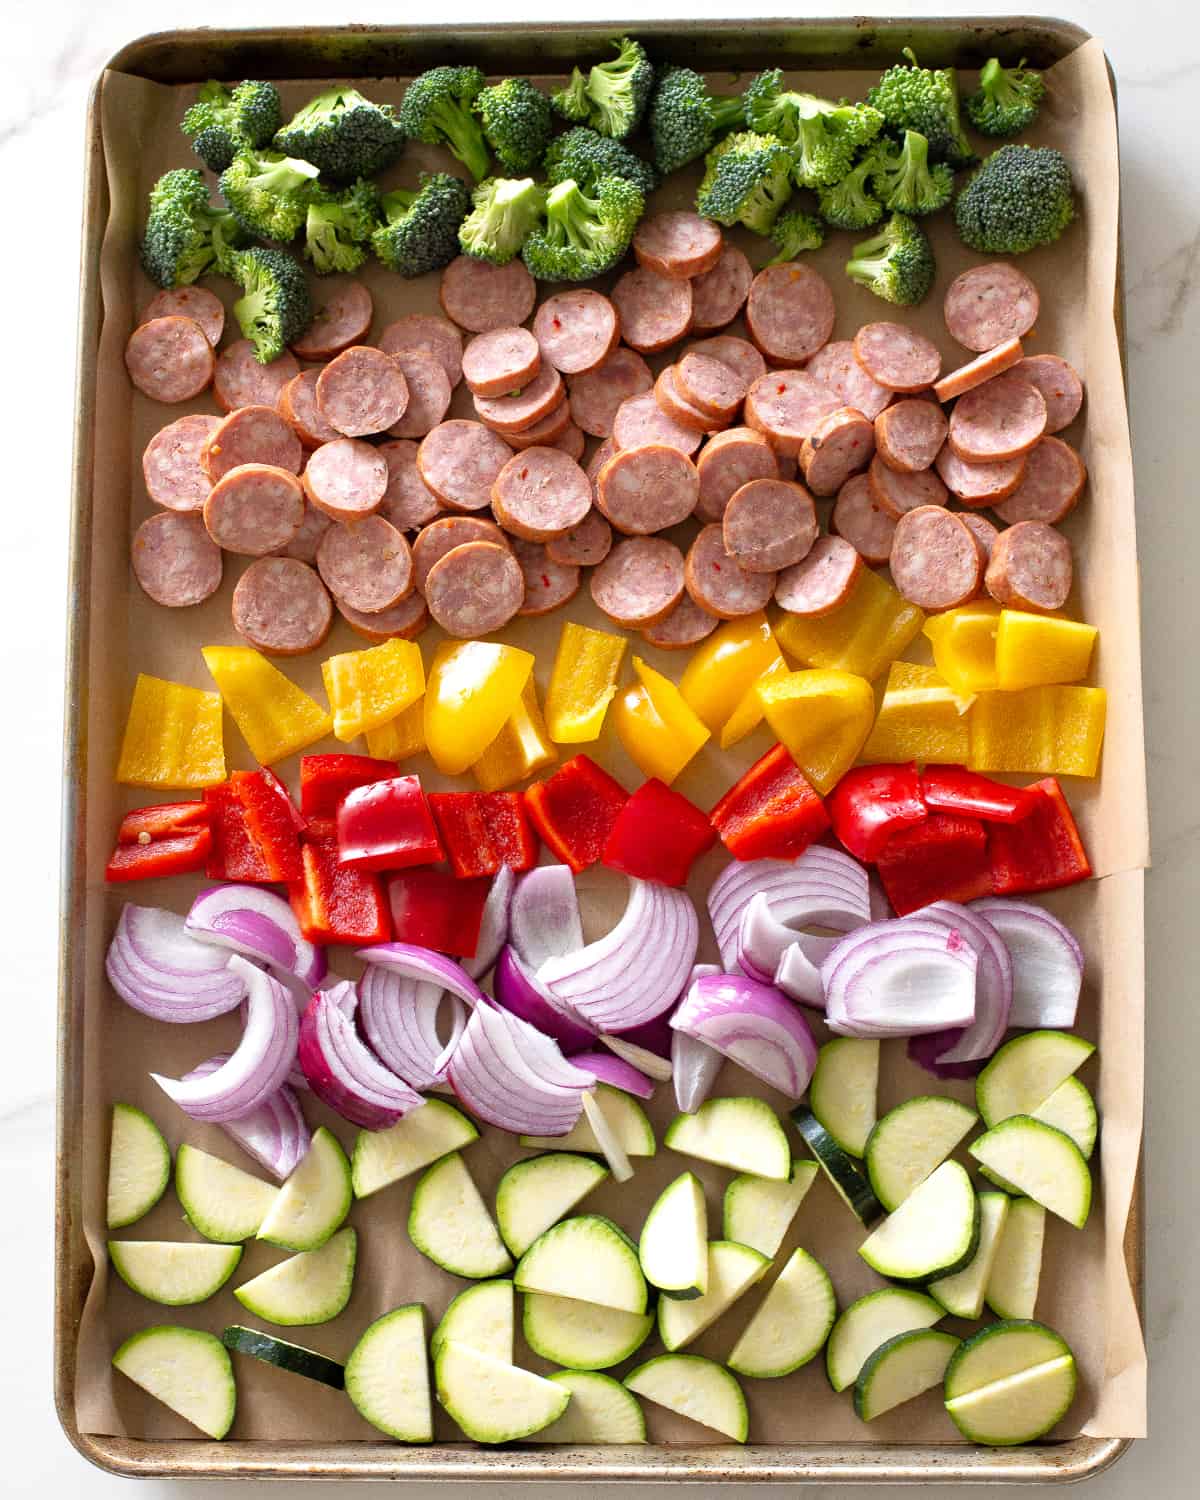 sheet pan of veggies